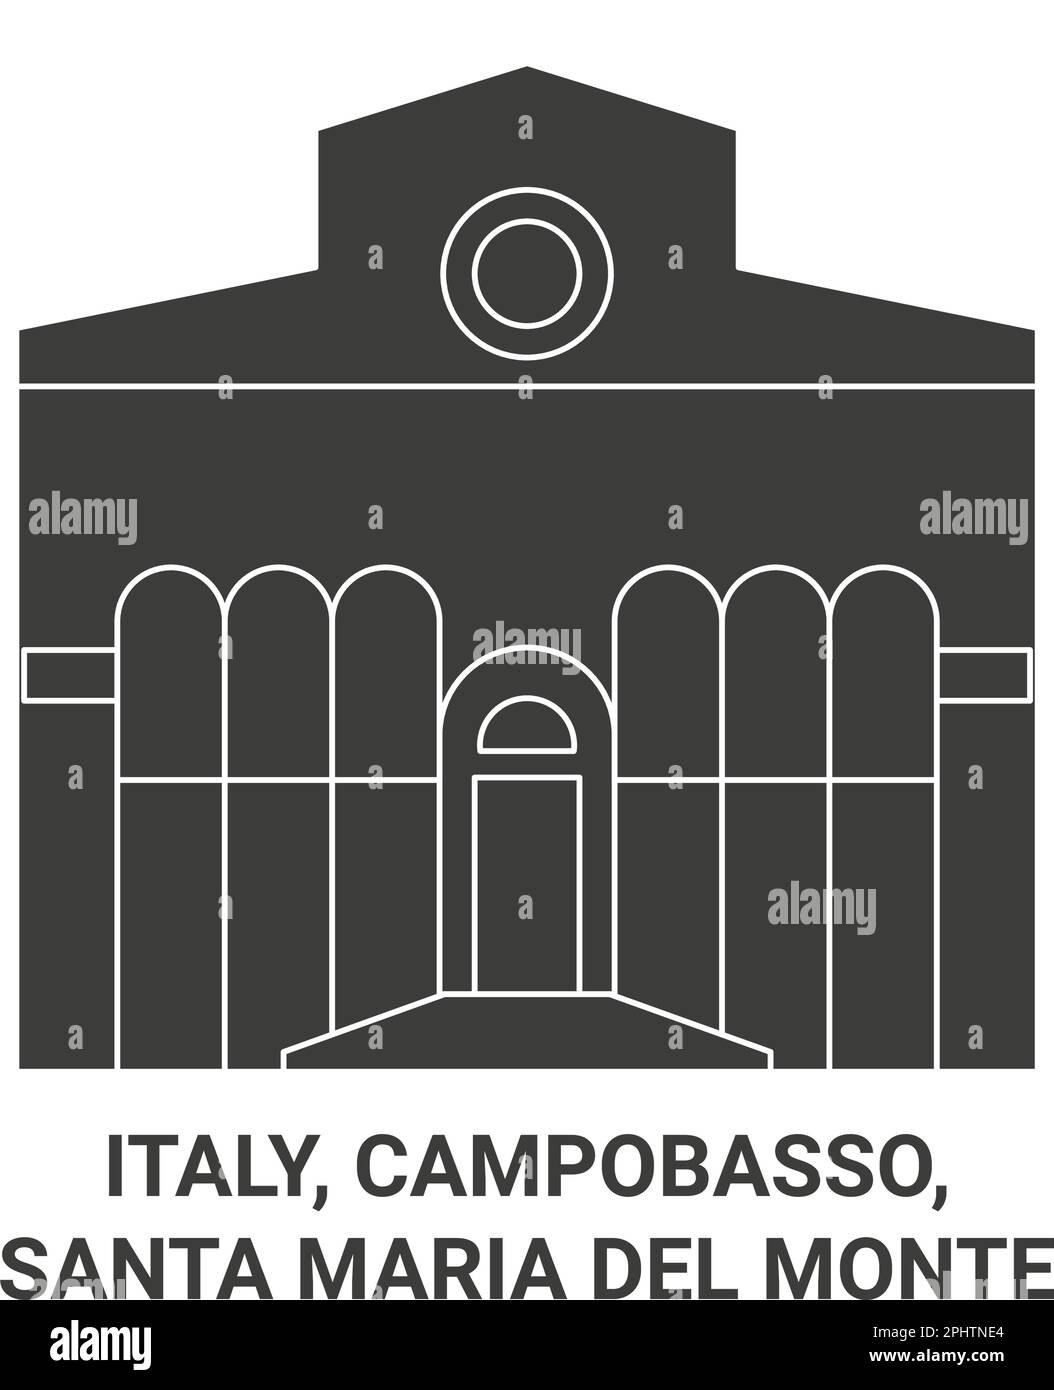 Italia, Campobasso, Santa Maria del Monte viaggio punto di riferimento vettoriale illustrazione Illustrazione Vettoriale